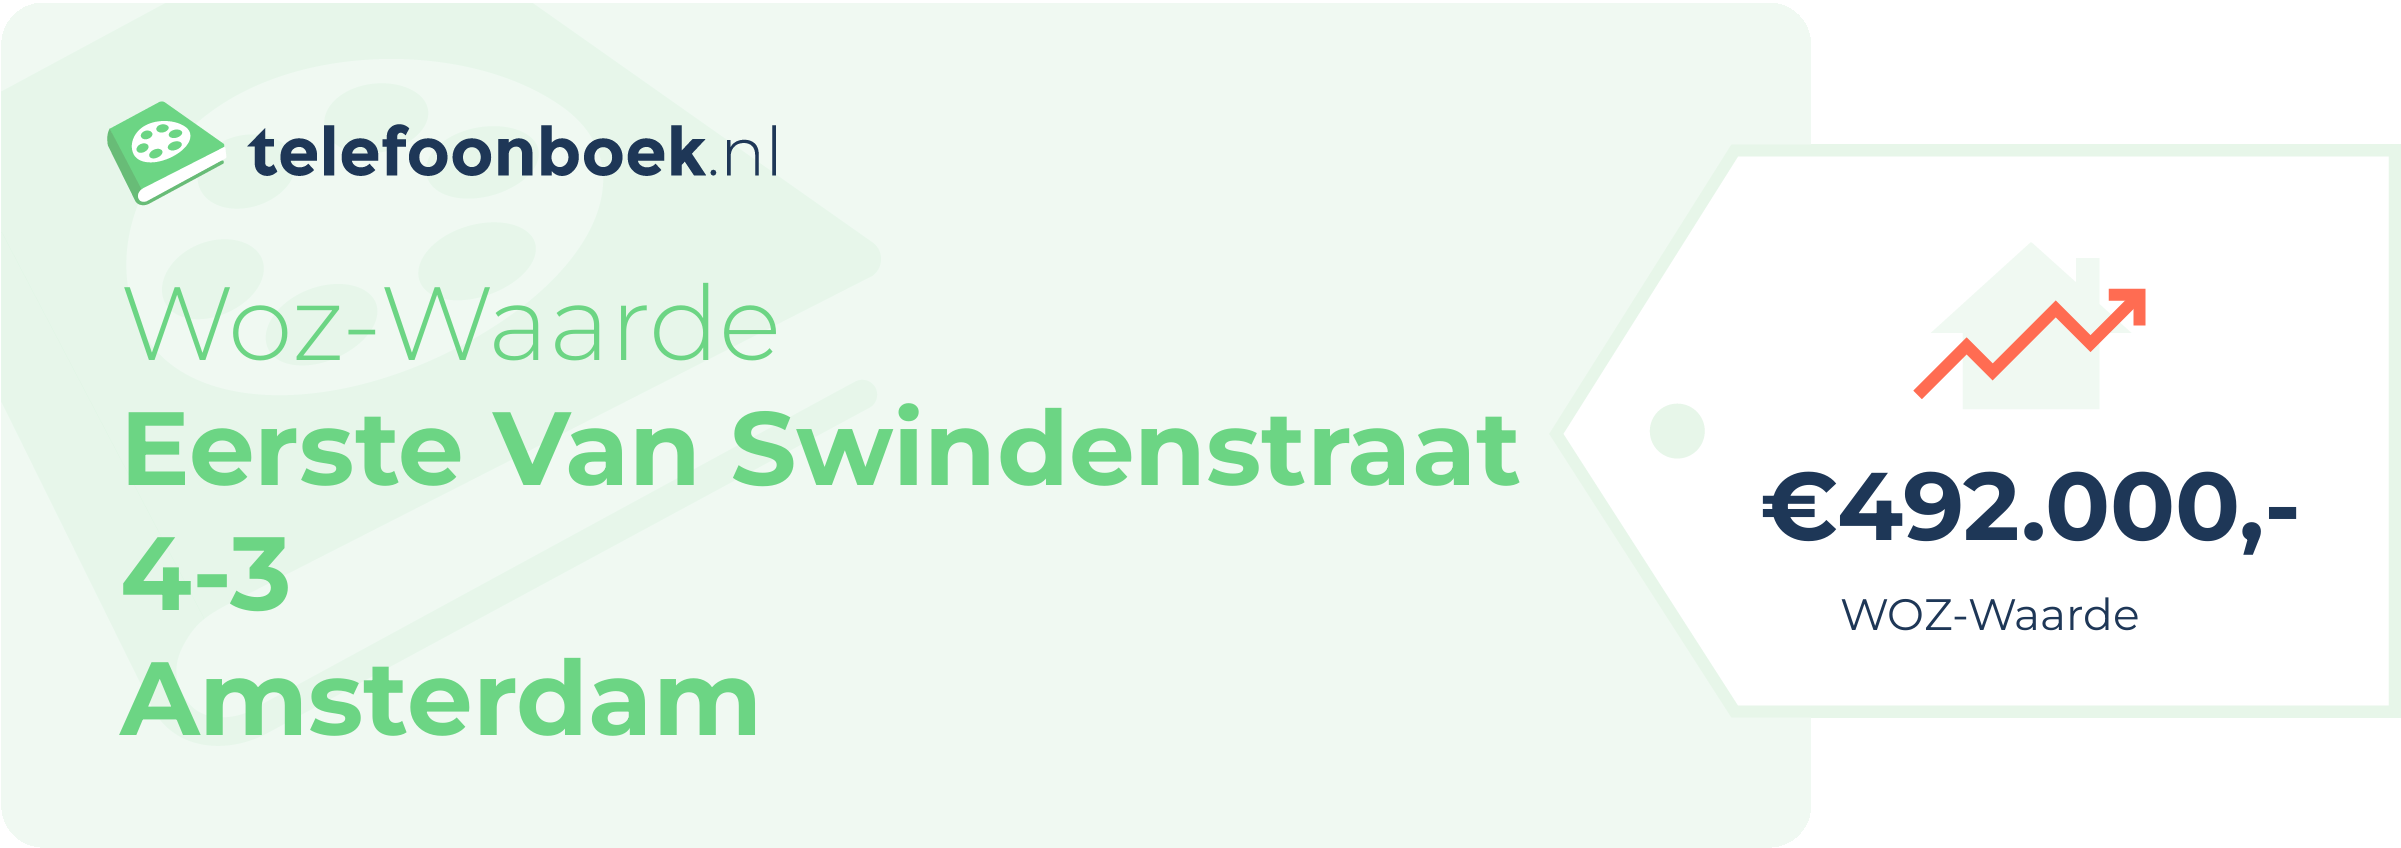 WOZ-waarde Eerste Van Swindenstraat 4-3 Amsterdam